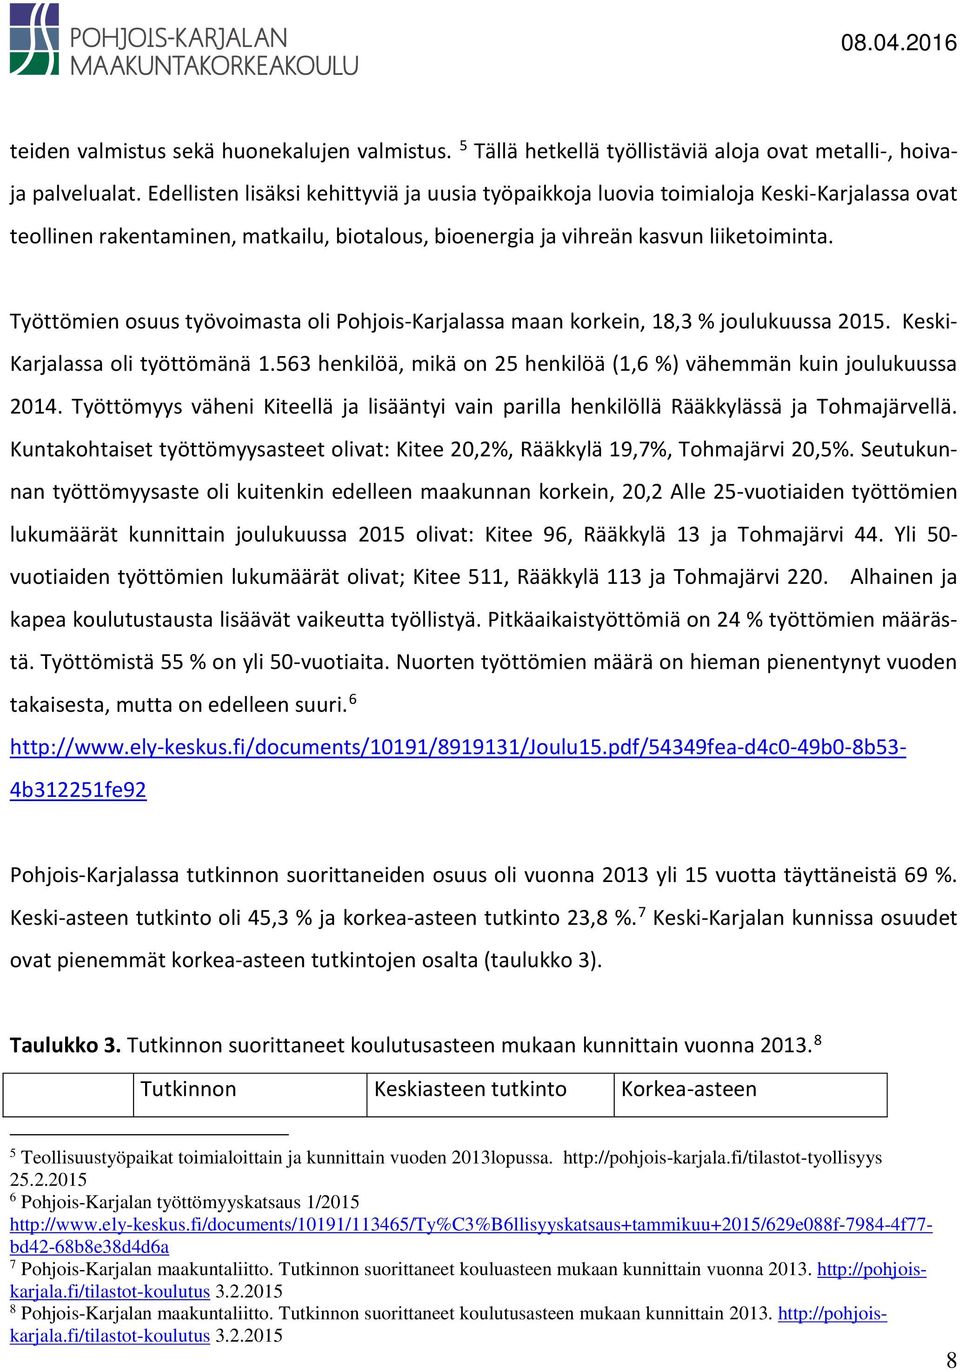 Työttömien osuus työvoimasta oli Pohjois-Karjalassa maan korkein, 18,3 % joulukuussa 2015. Keski- Karjalassa oli työttömänä 1.563 henkilöä, mikä on 25 henkilöä (1,6 %) vähemmän kuin joulukuussa 2014.